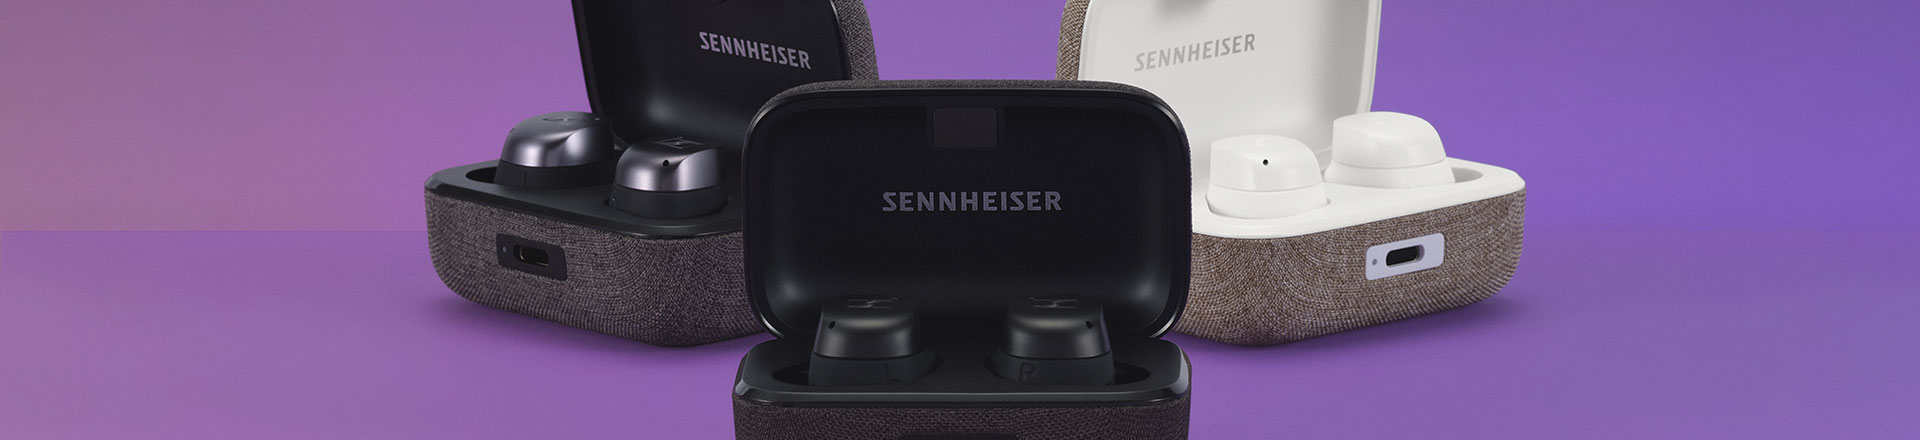 Sennheiser pokazał MOMENTUM True Wireless 3 - Słuchawki inspirowane muzyką